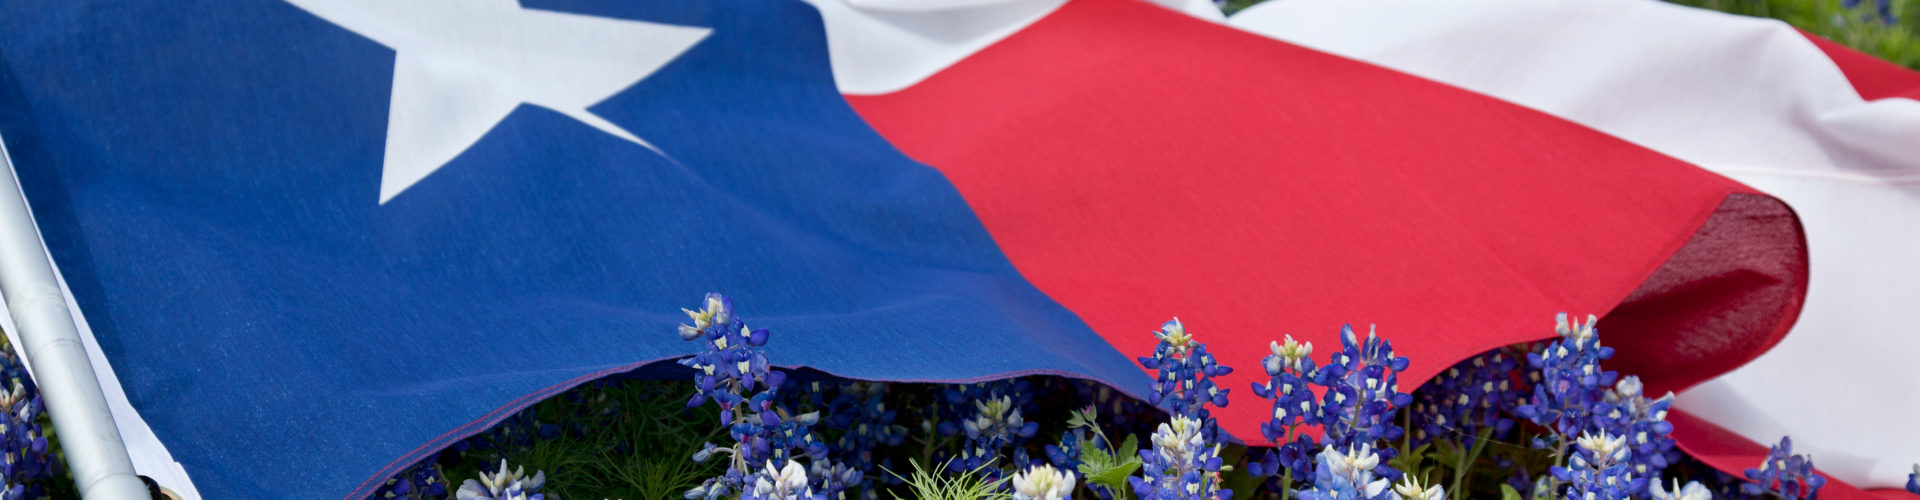 Texas flag in a field of bluebonnet flowers